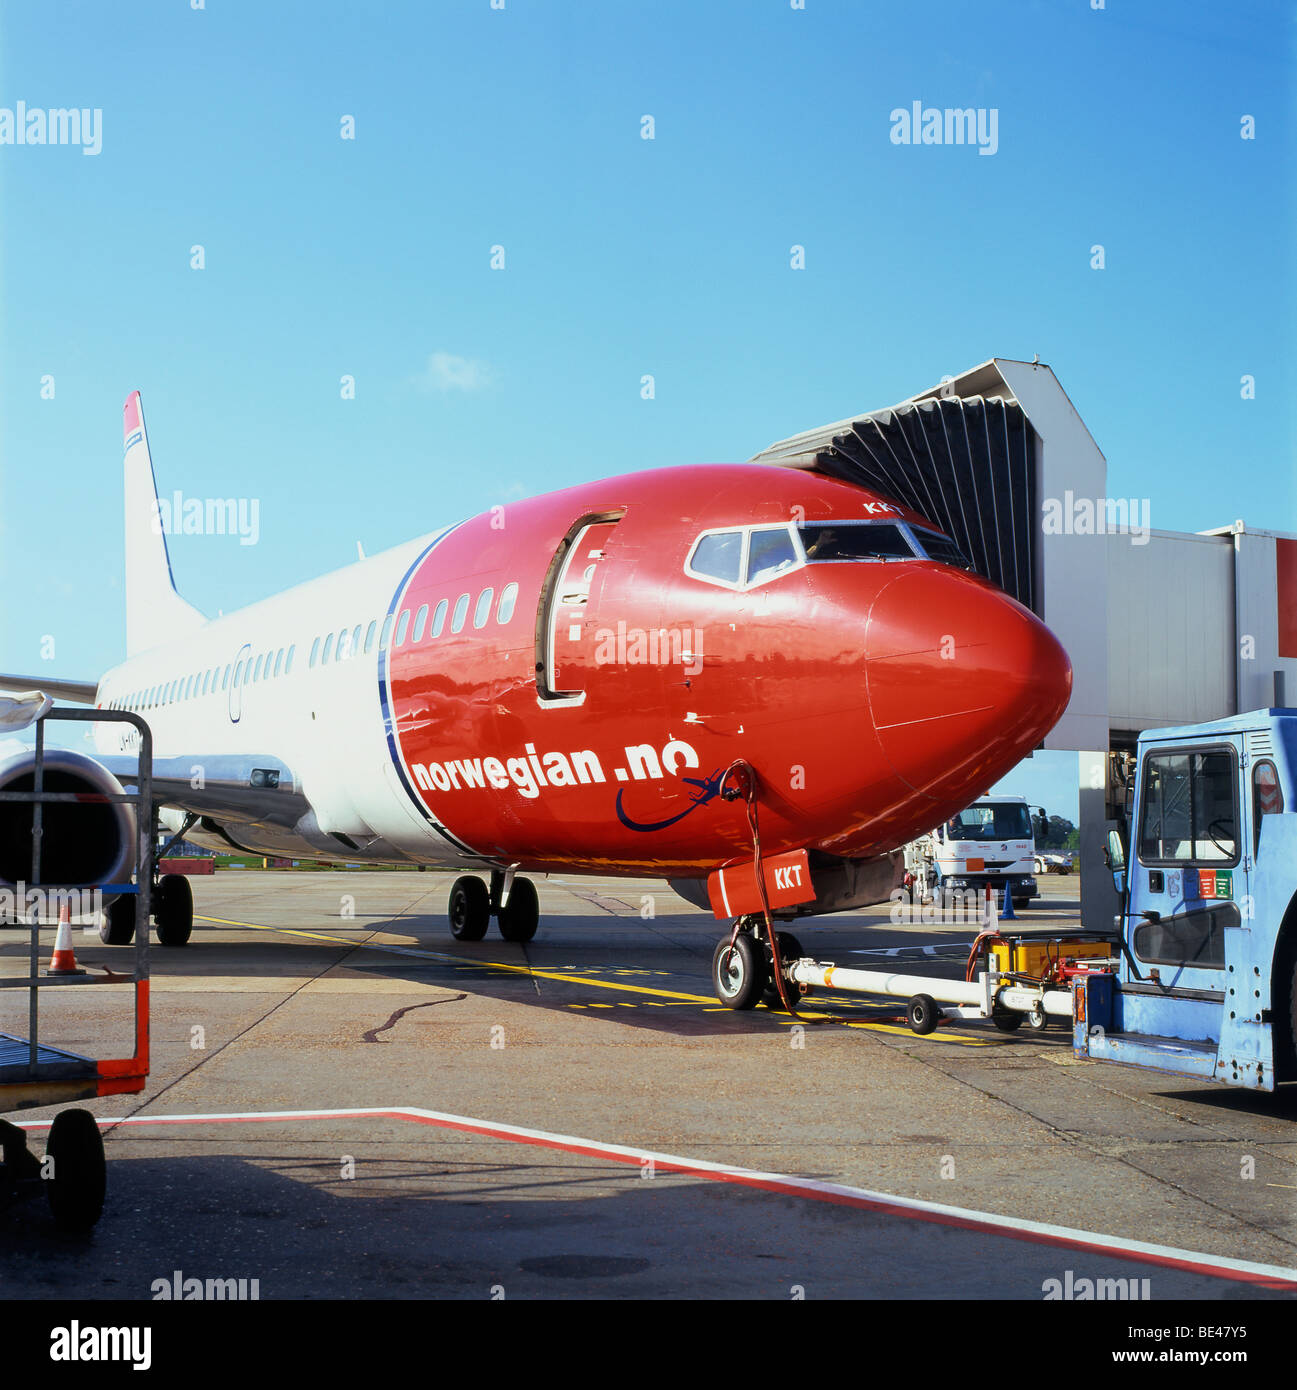 Billet d'avion air Discount avion Compagnies Aériennes norvégiennes en attente sur le tarmac de l'aéroport de Gatwick, Londres Angleterre Royaume-uni KATHY DEWITT Banque D'Images